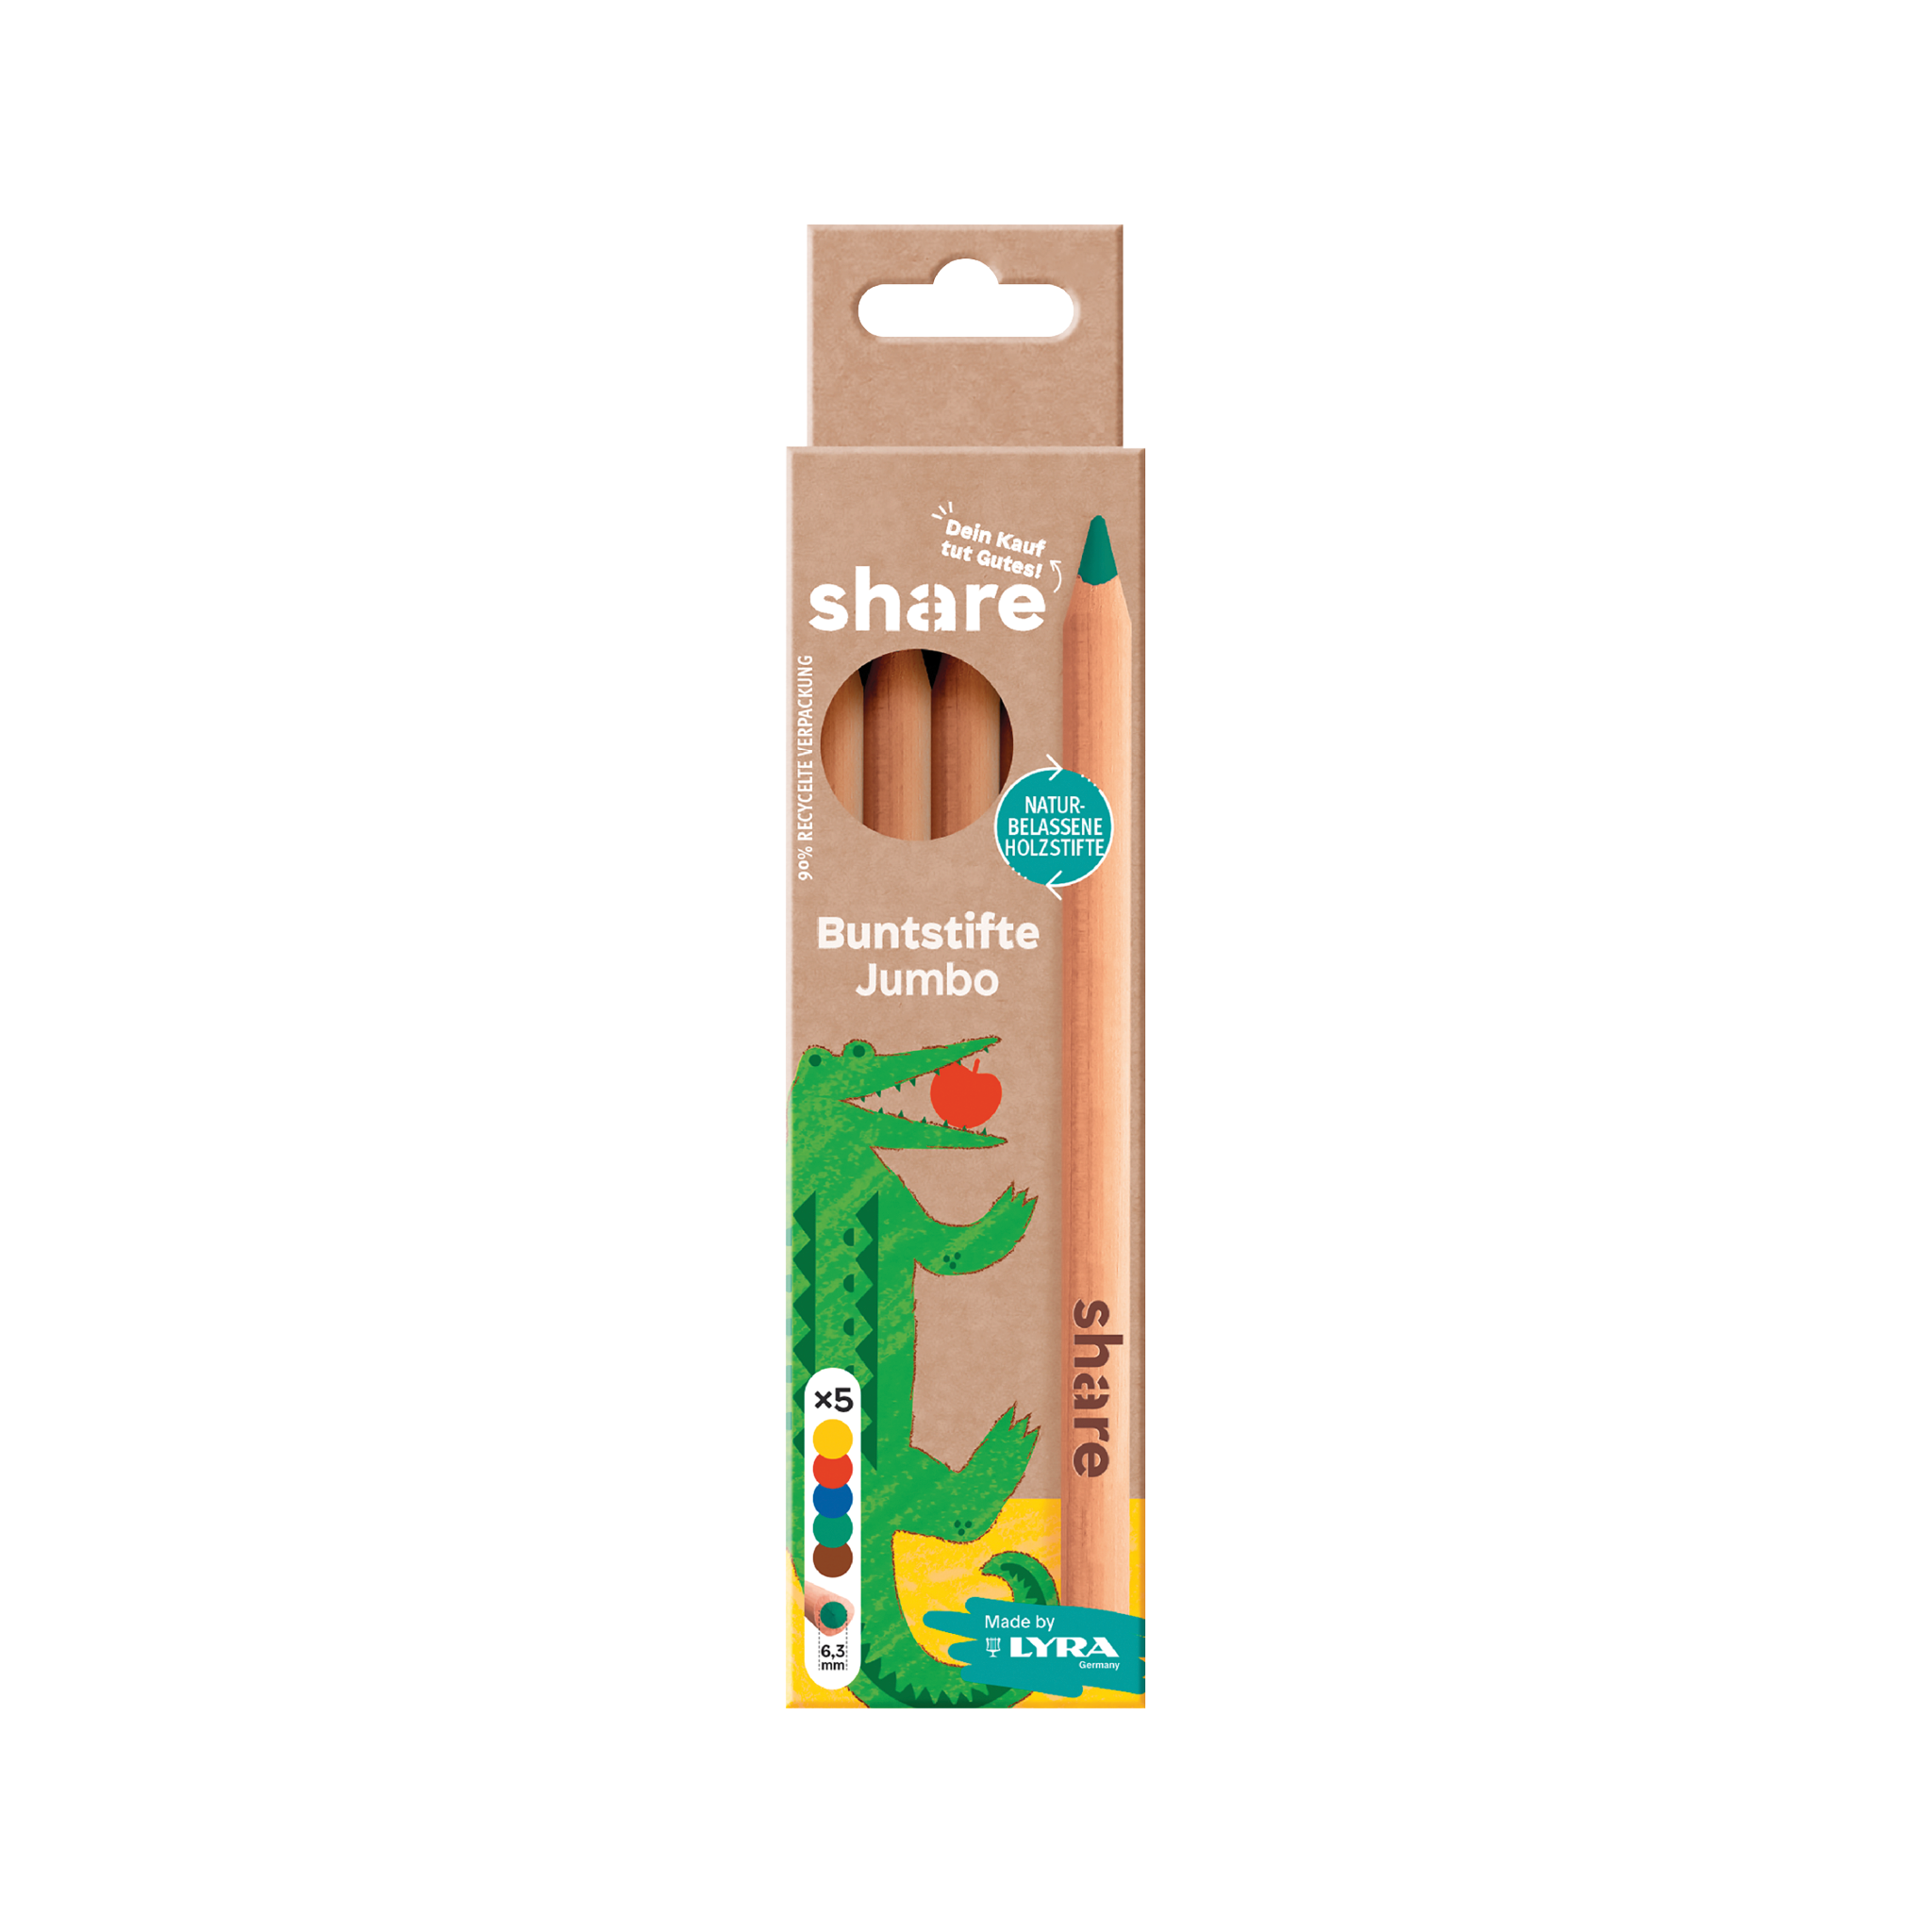 Eine Packung Share Buntstift Jumbo 5er-Set für Kinder mit einer lebendigen Illustration eines grünen, freundlichen Krokodils, mit Schwerpunkt auf umweltfreundlichen Materialien und einem „Share“-Thema.